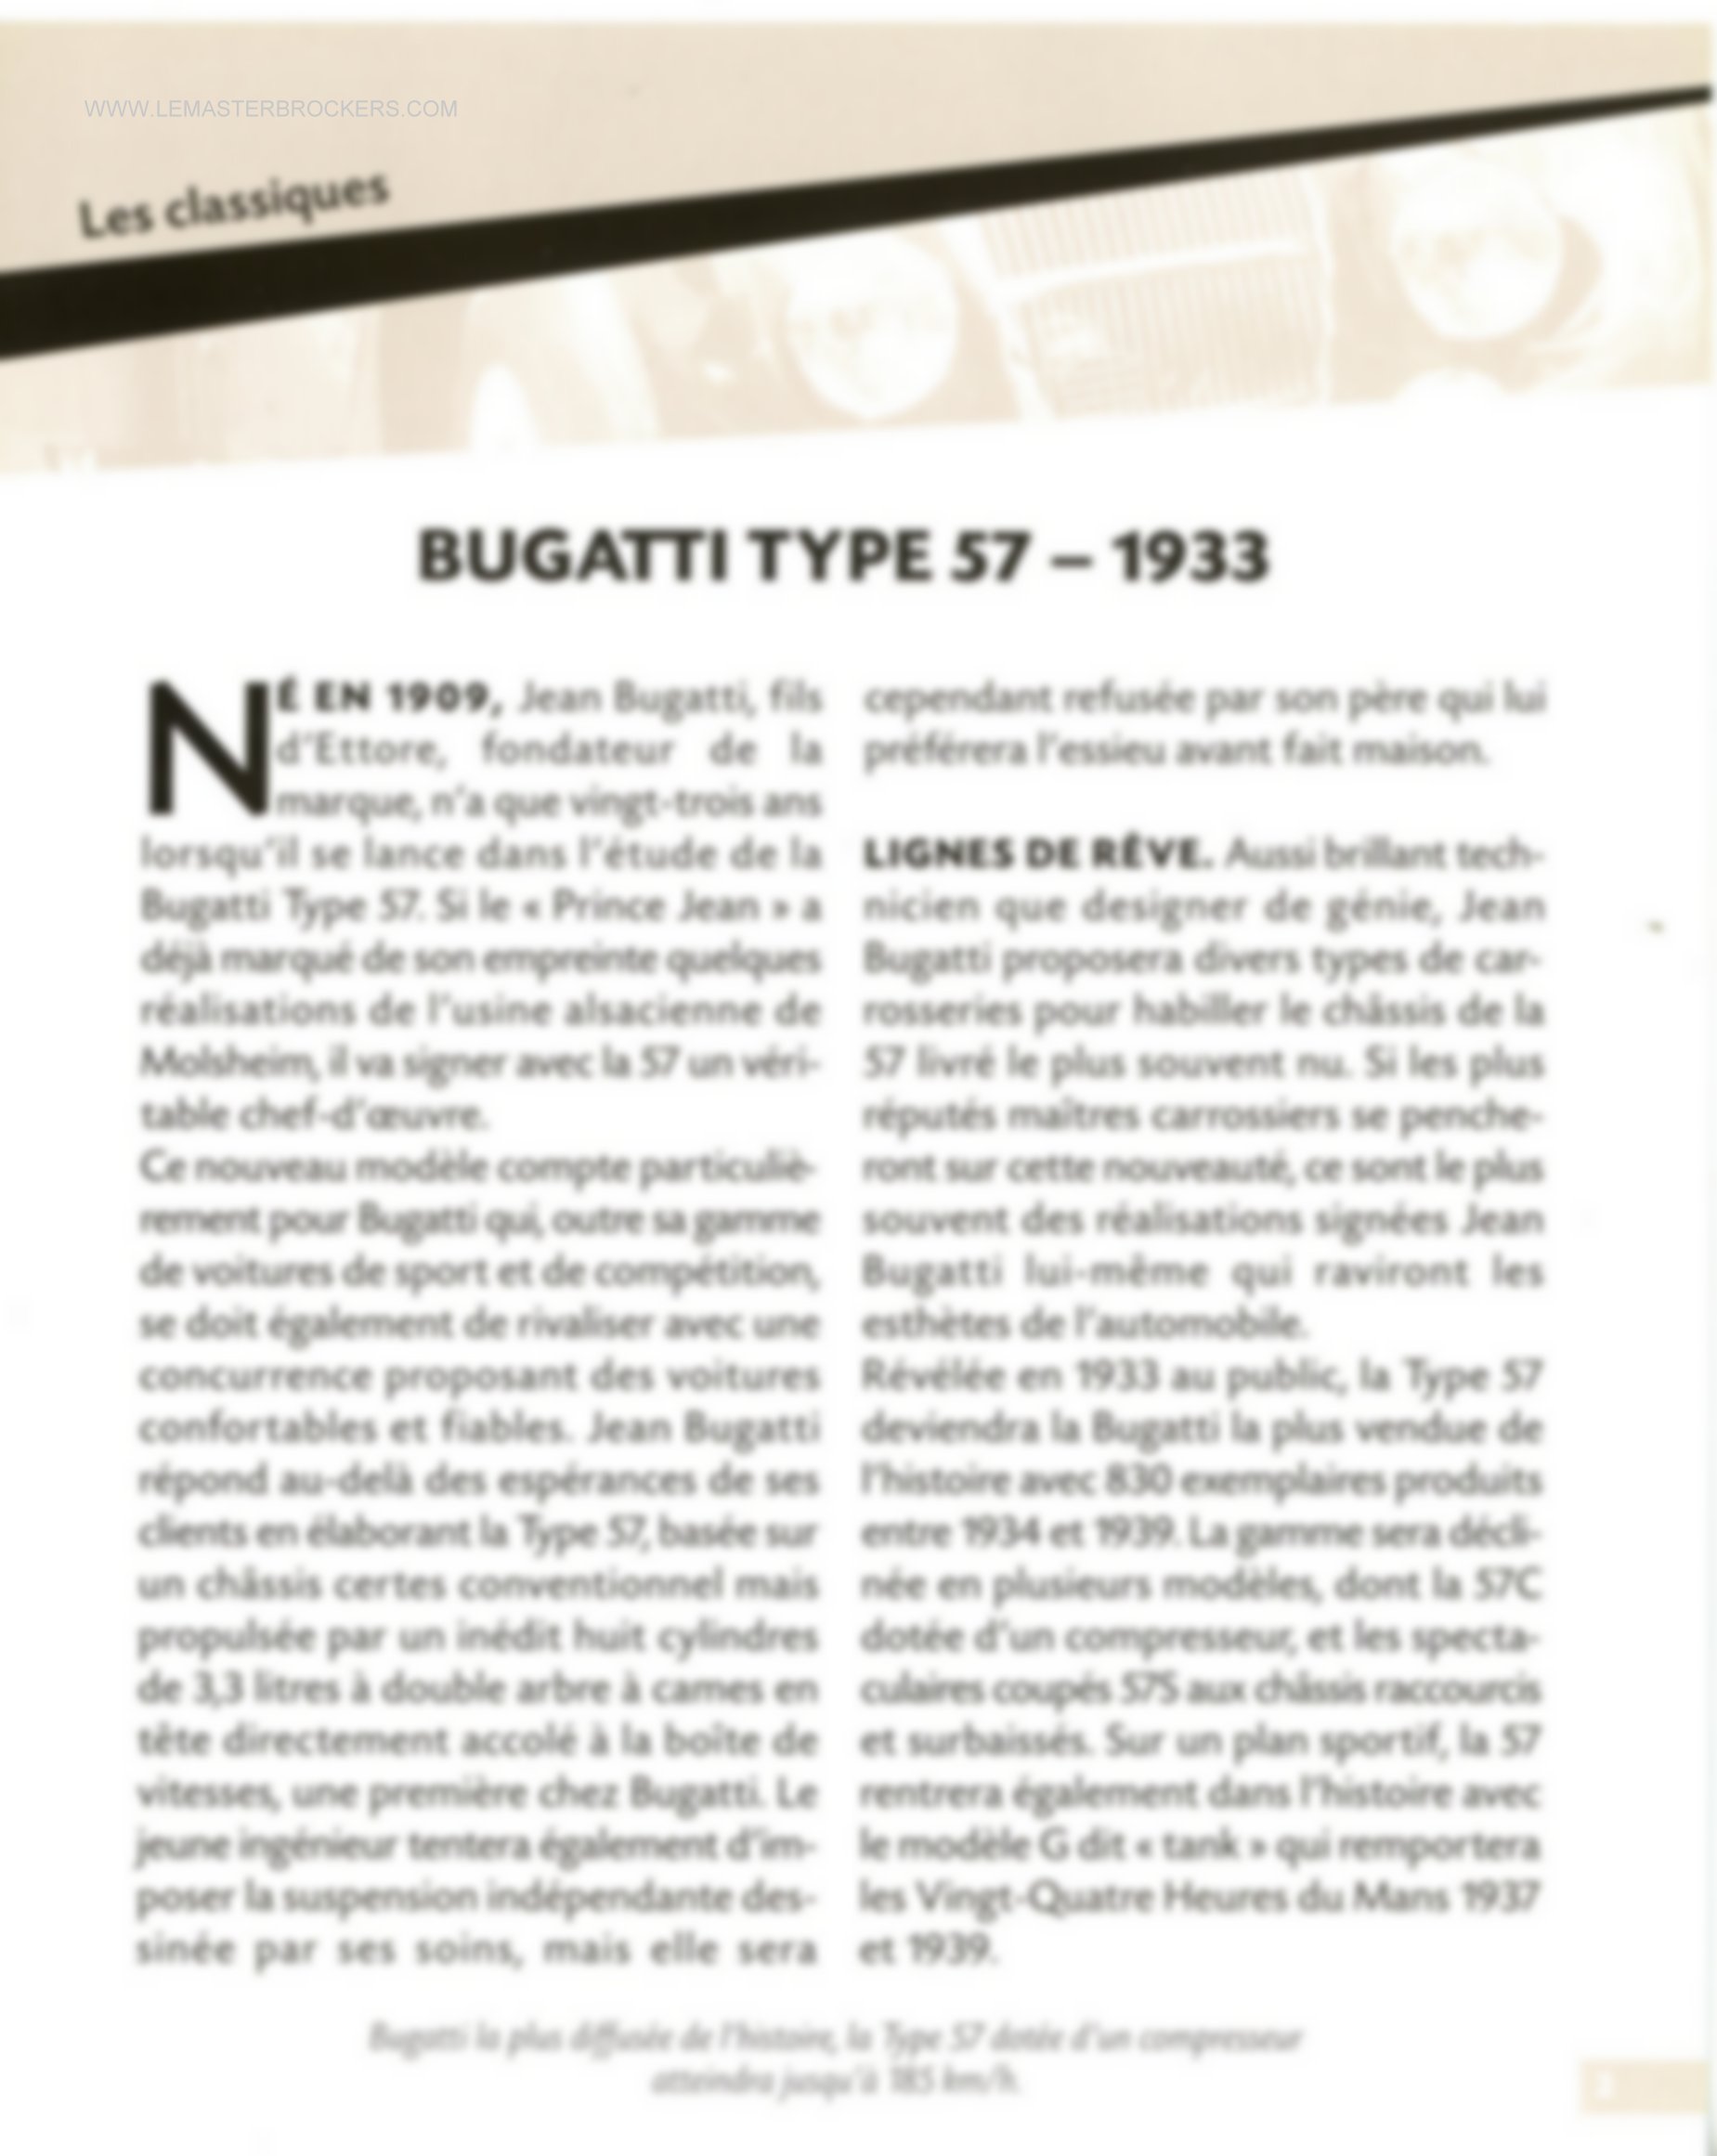 FICHE BUGATTI TYPE 57 - 1933